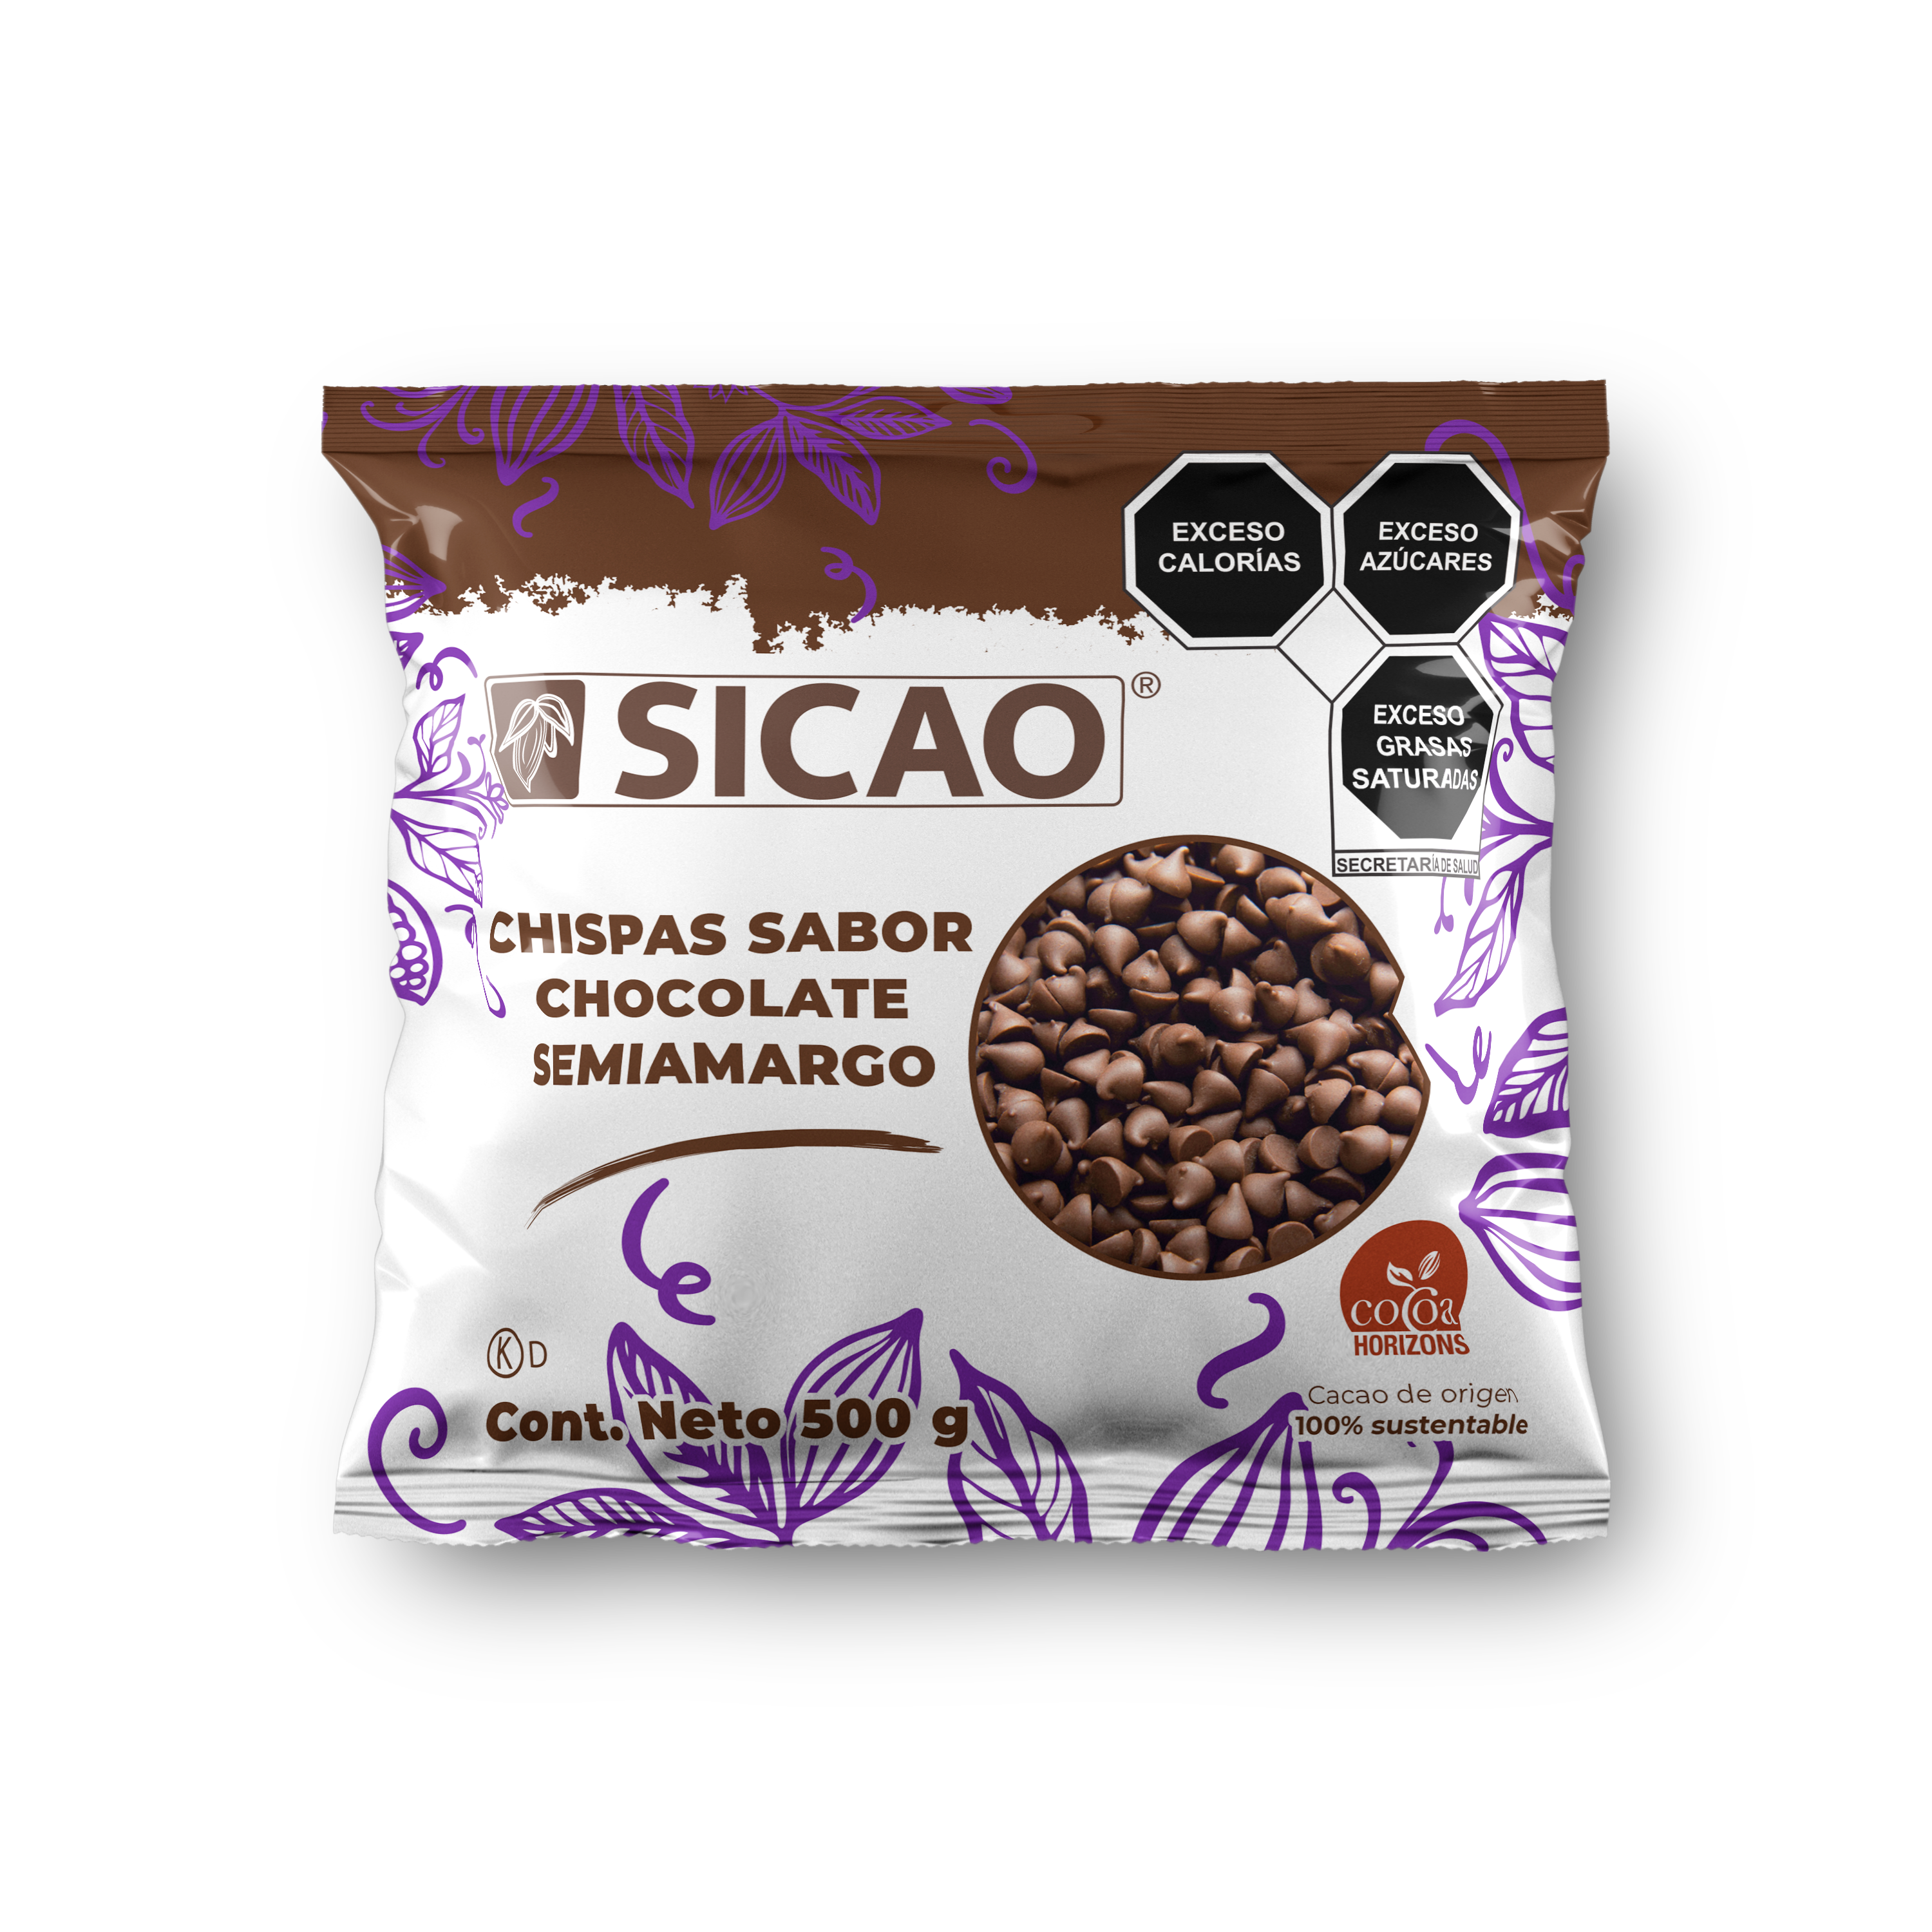 Sucedáneo - Chispas Sabor Chocolate Semiamargo - Chispas - Bolsa 500 g (1)